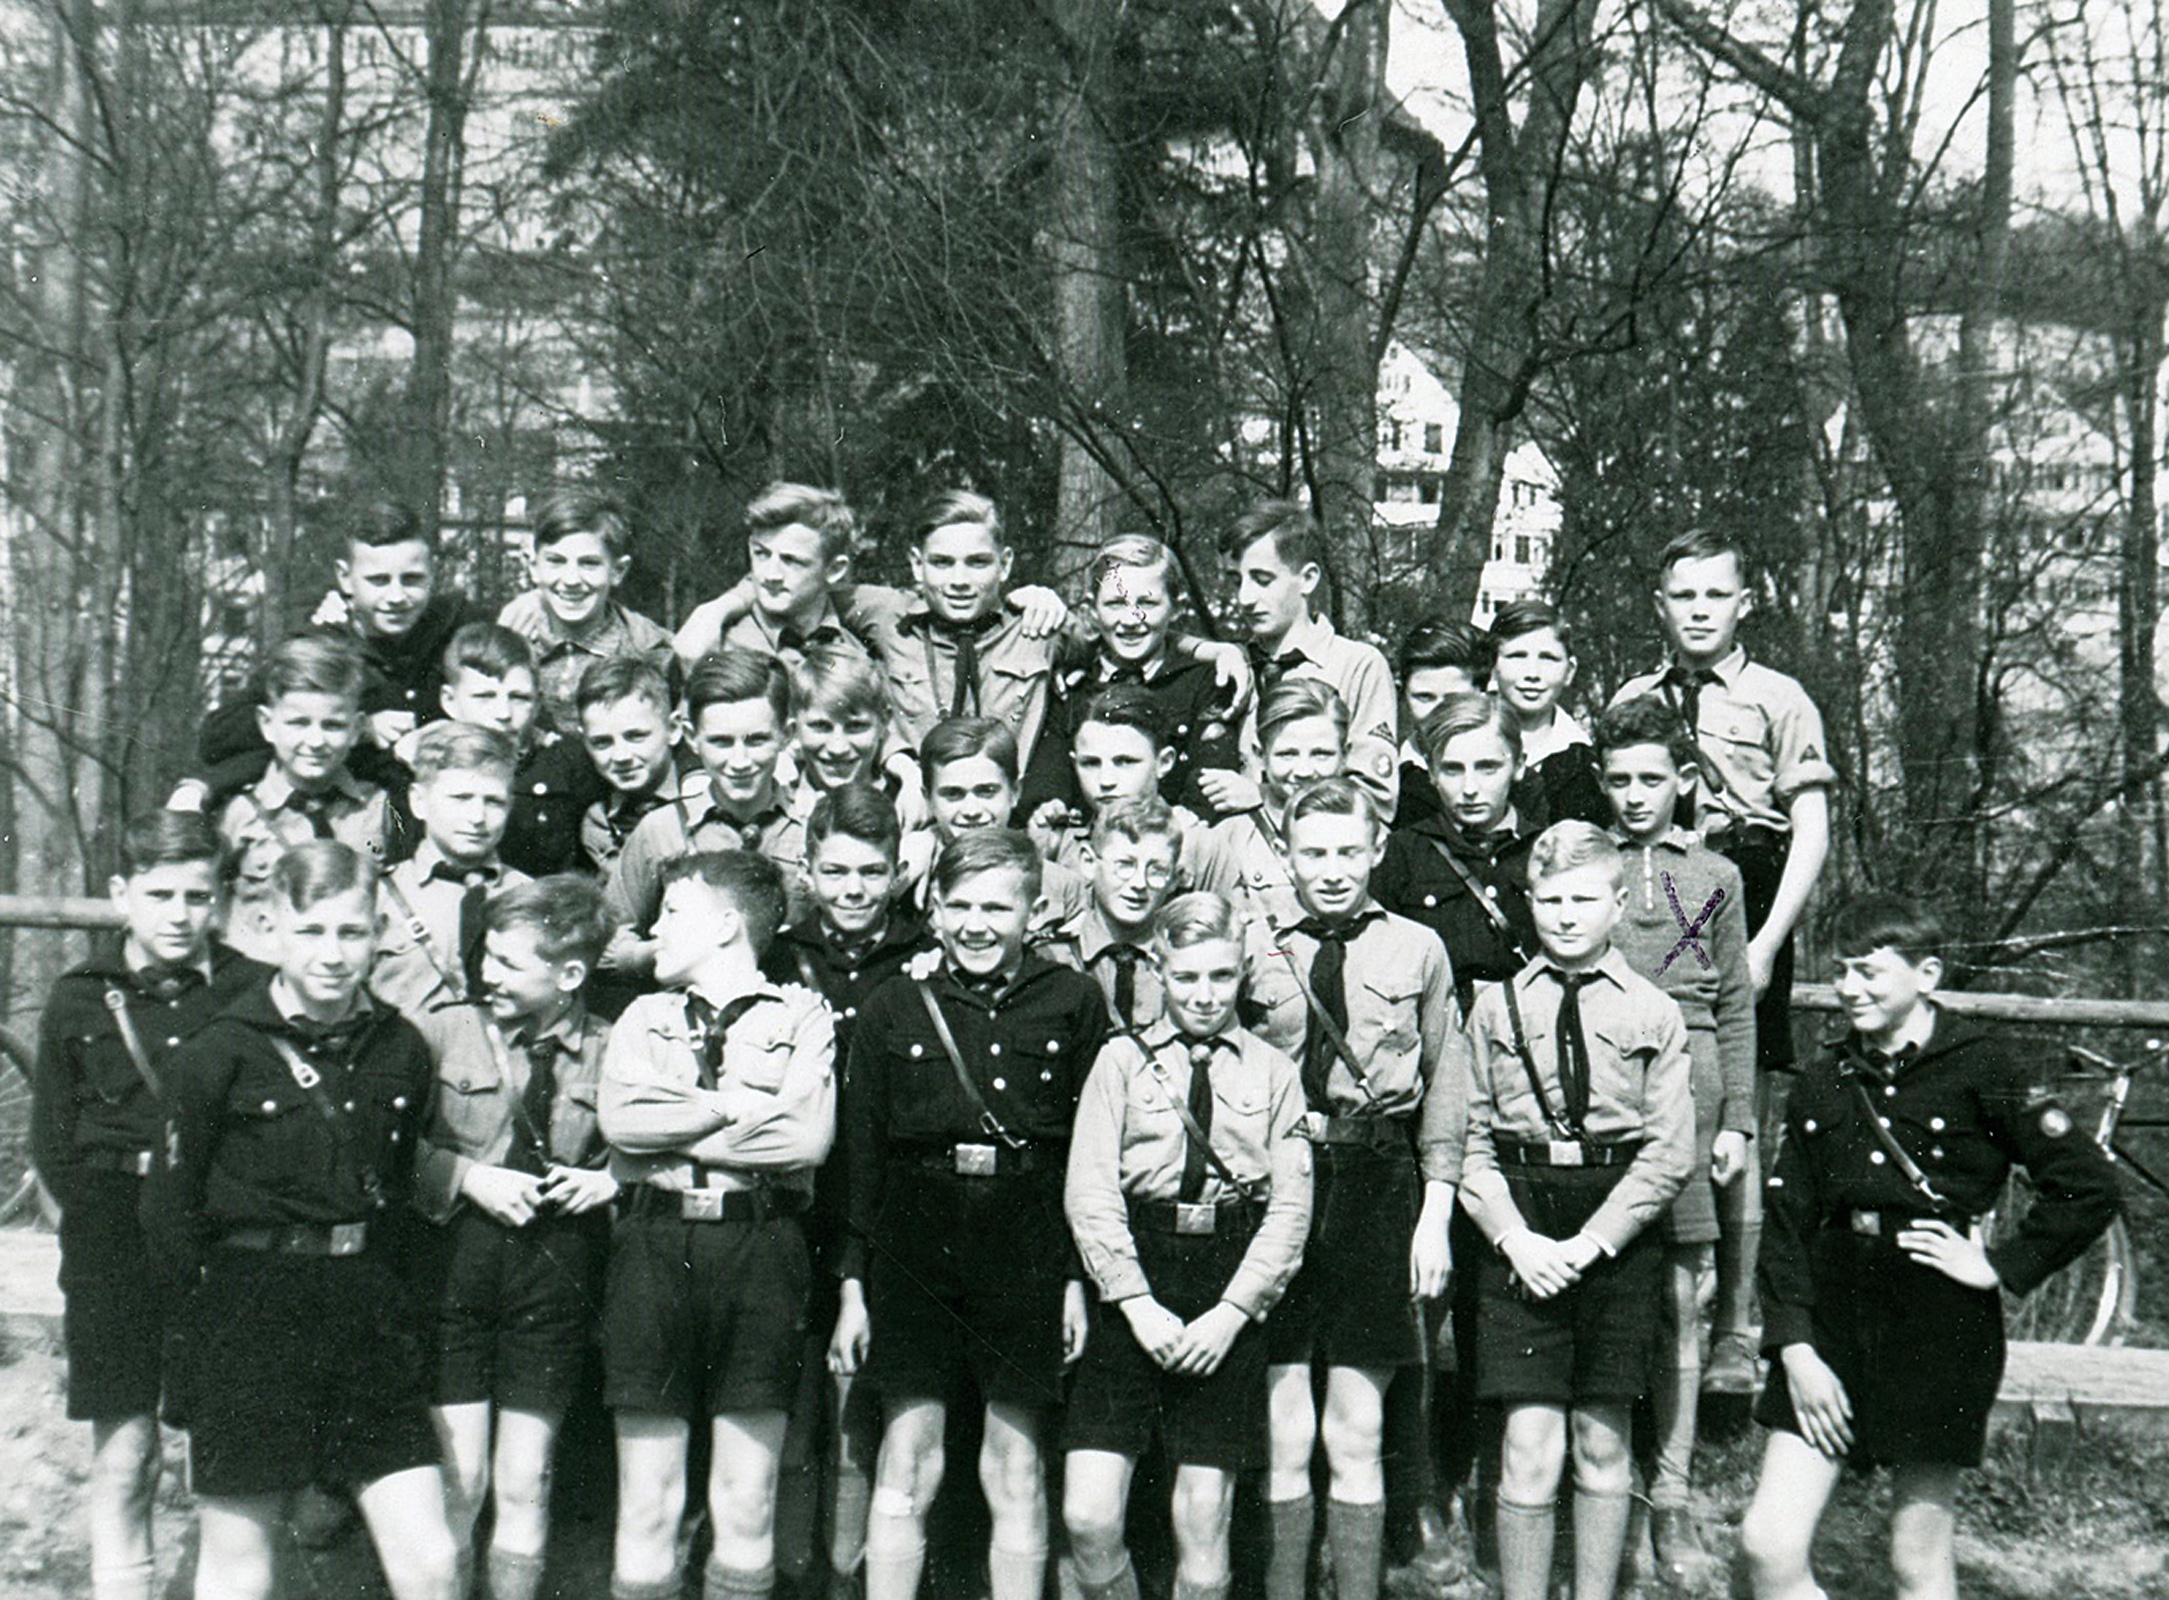 1937 noch geduldet, aber ohne HJ-Uniform schon sichtbar ausgegrenzt aus der Klassengemeinschaft: Hans Bernheim in der zweiten Reihe, erster von rechts.